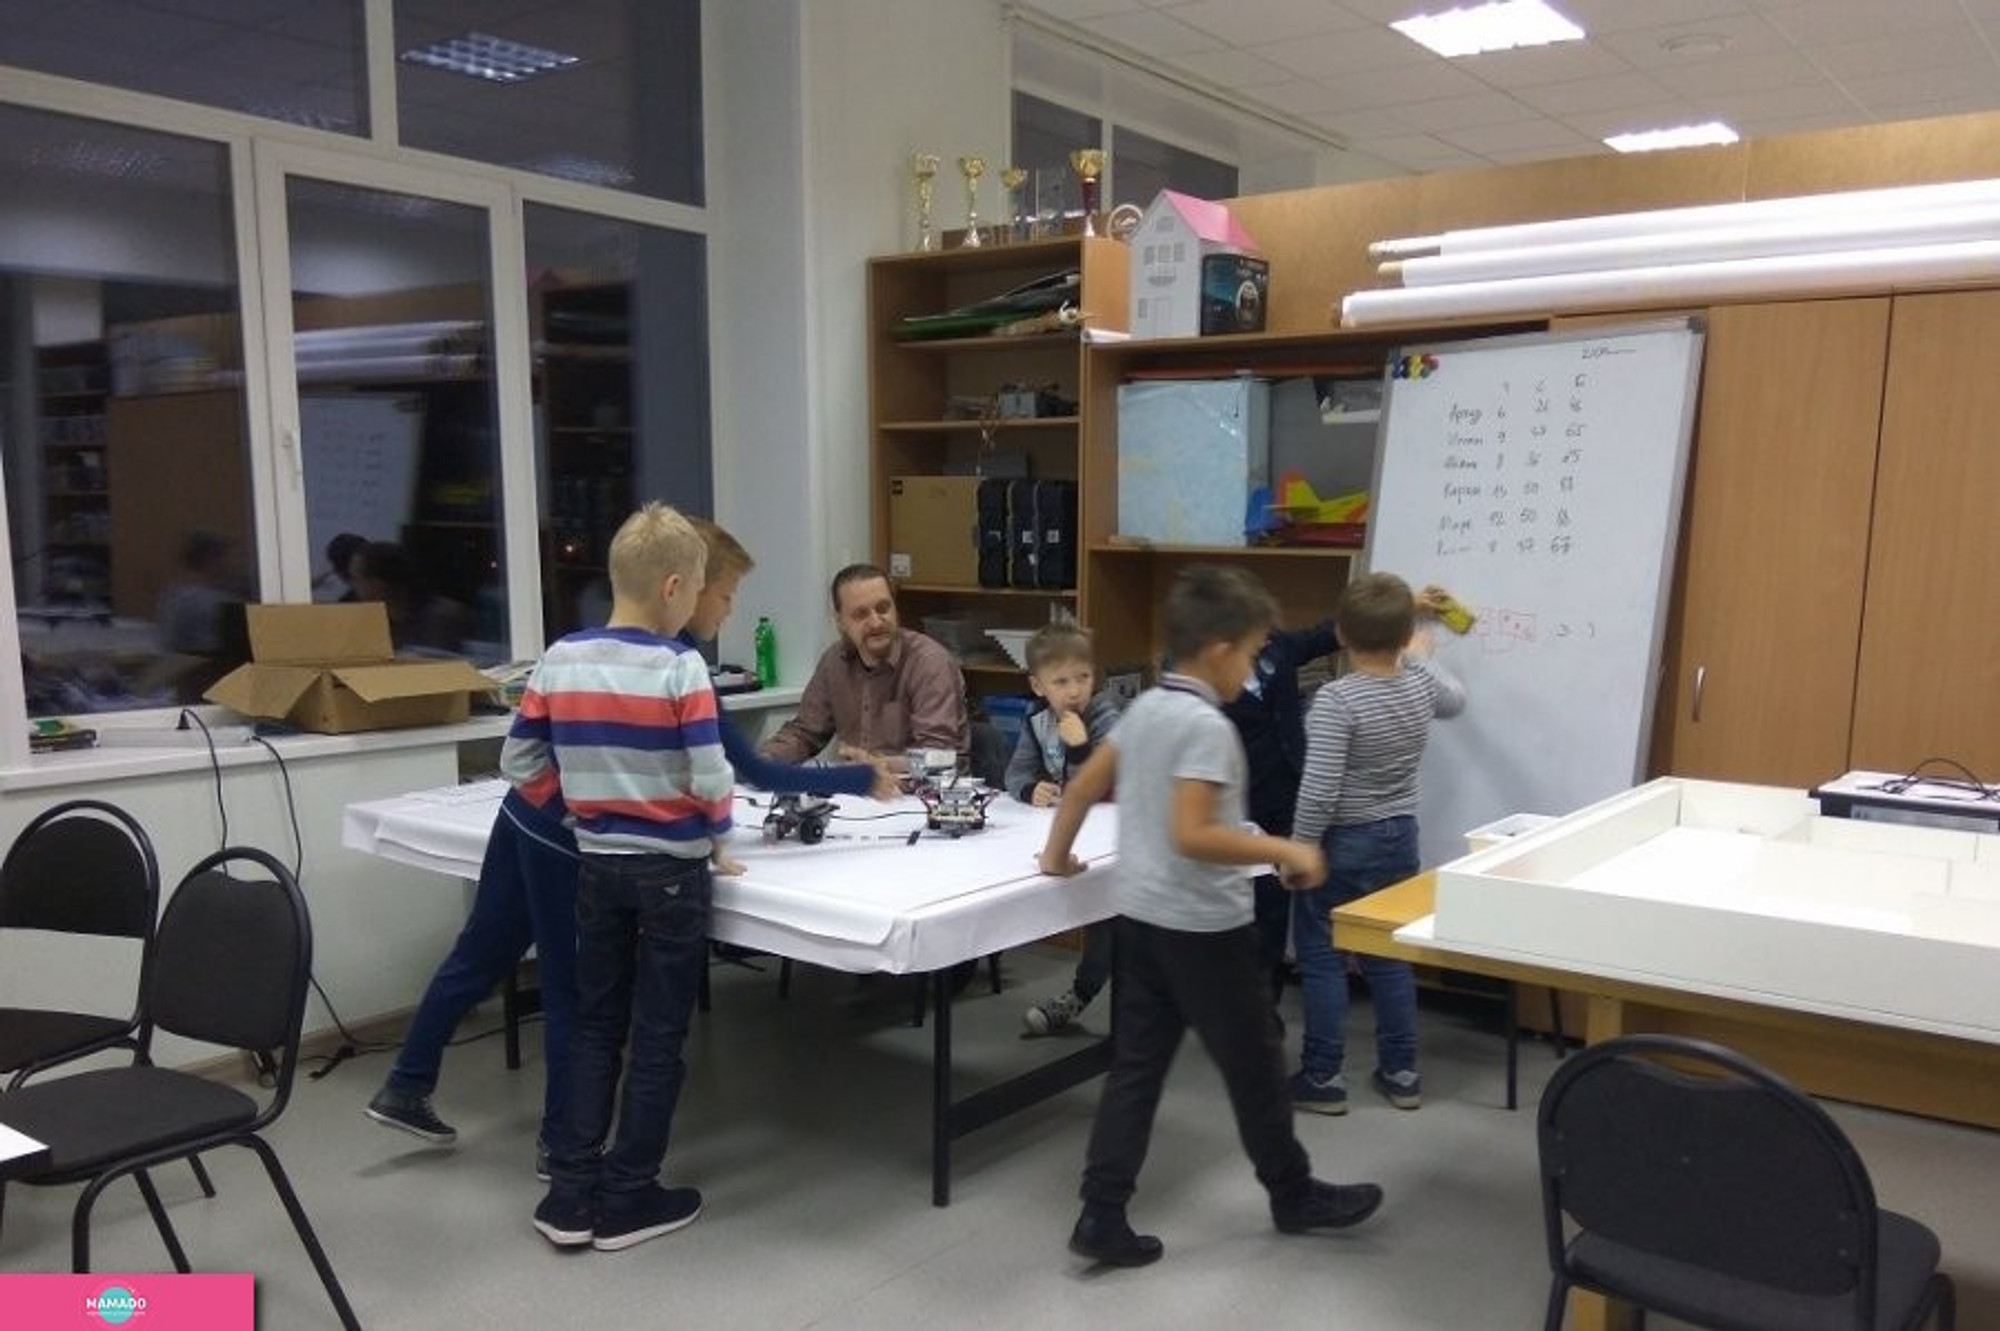 RobotLand на Петербургской, "Лаборатория робототехники", робототехника для детей от 5 до 15 лет, Казань 